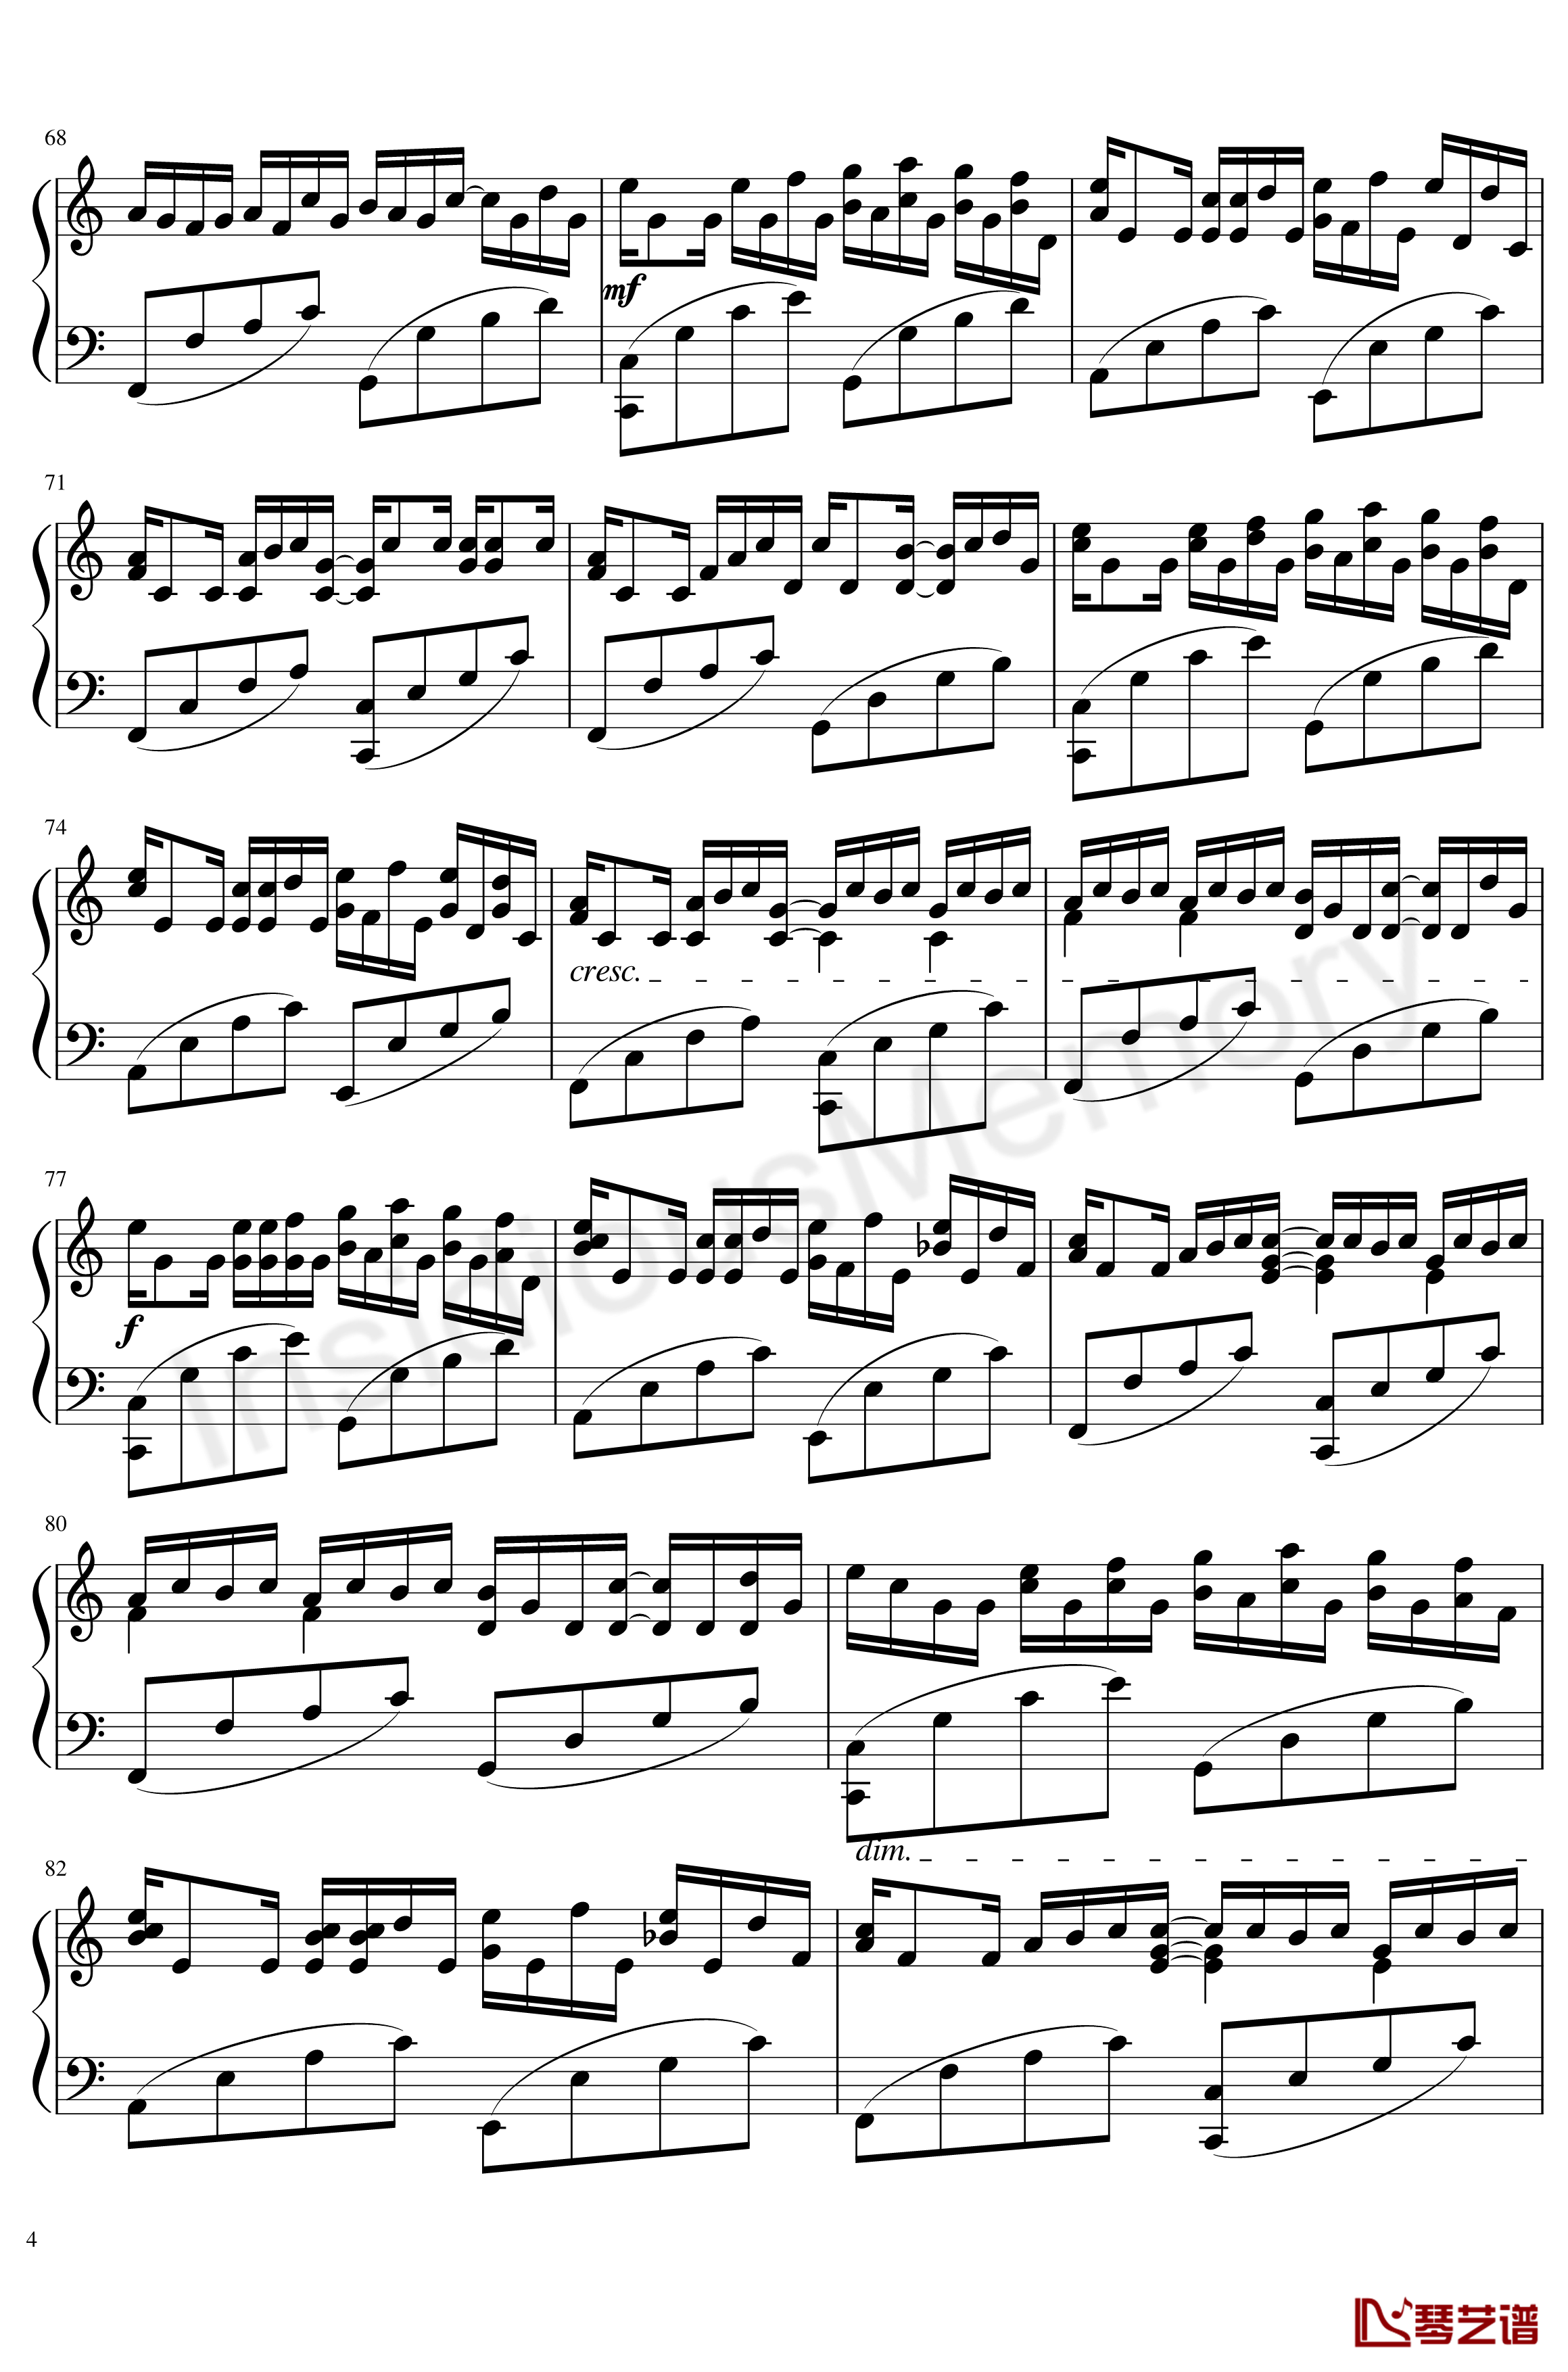 卡农变奏曲钢琴谱-Variations on the Canon-帕赫贝尔-Pachelbel4